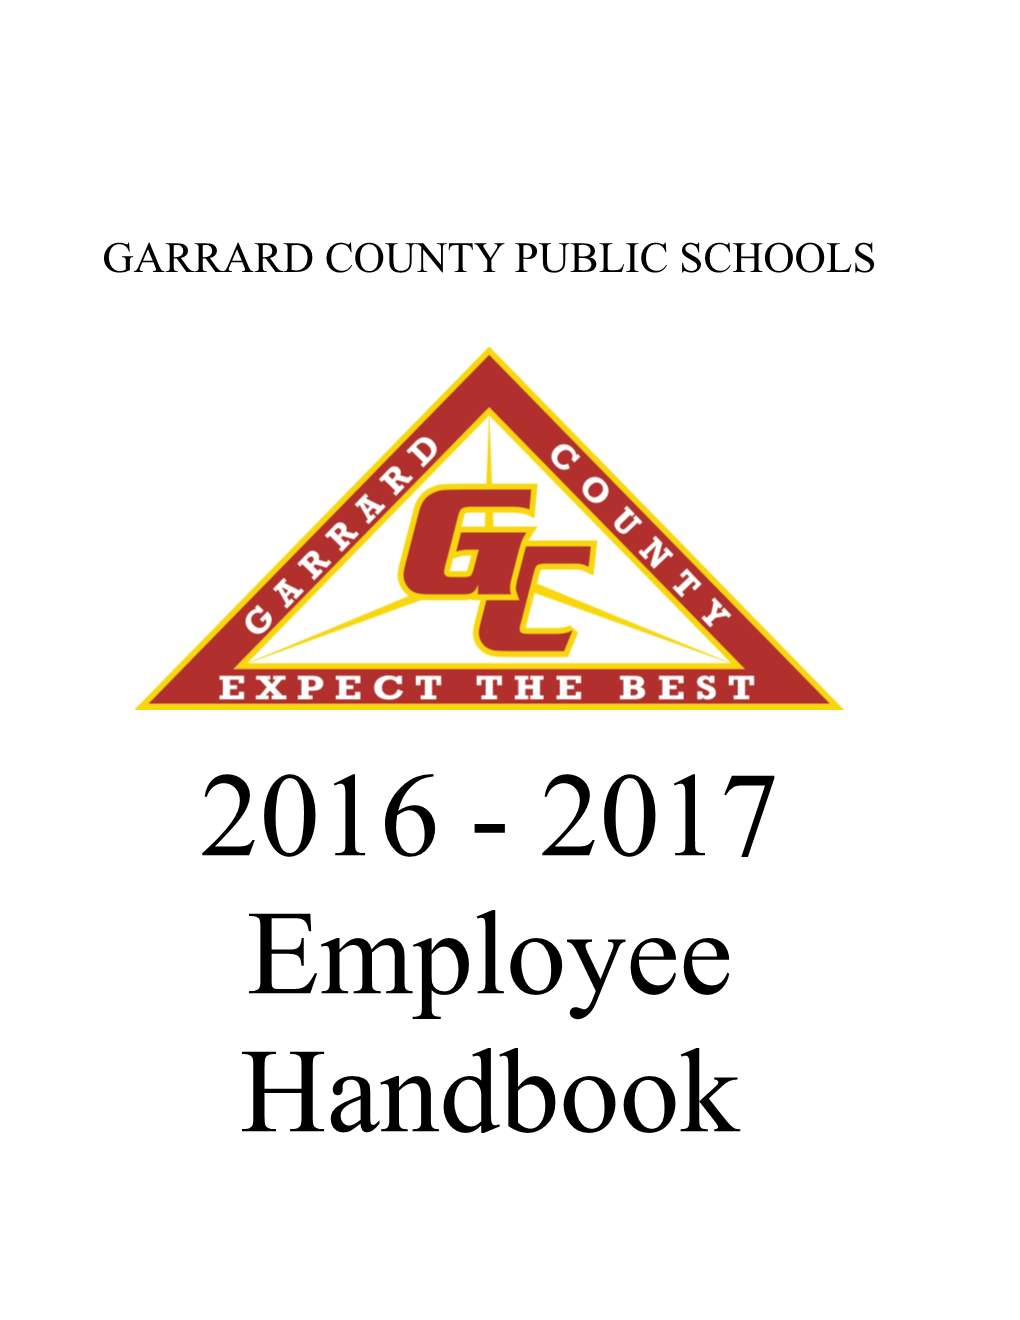 Garrard County Public Schools